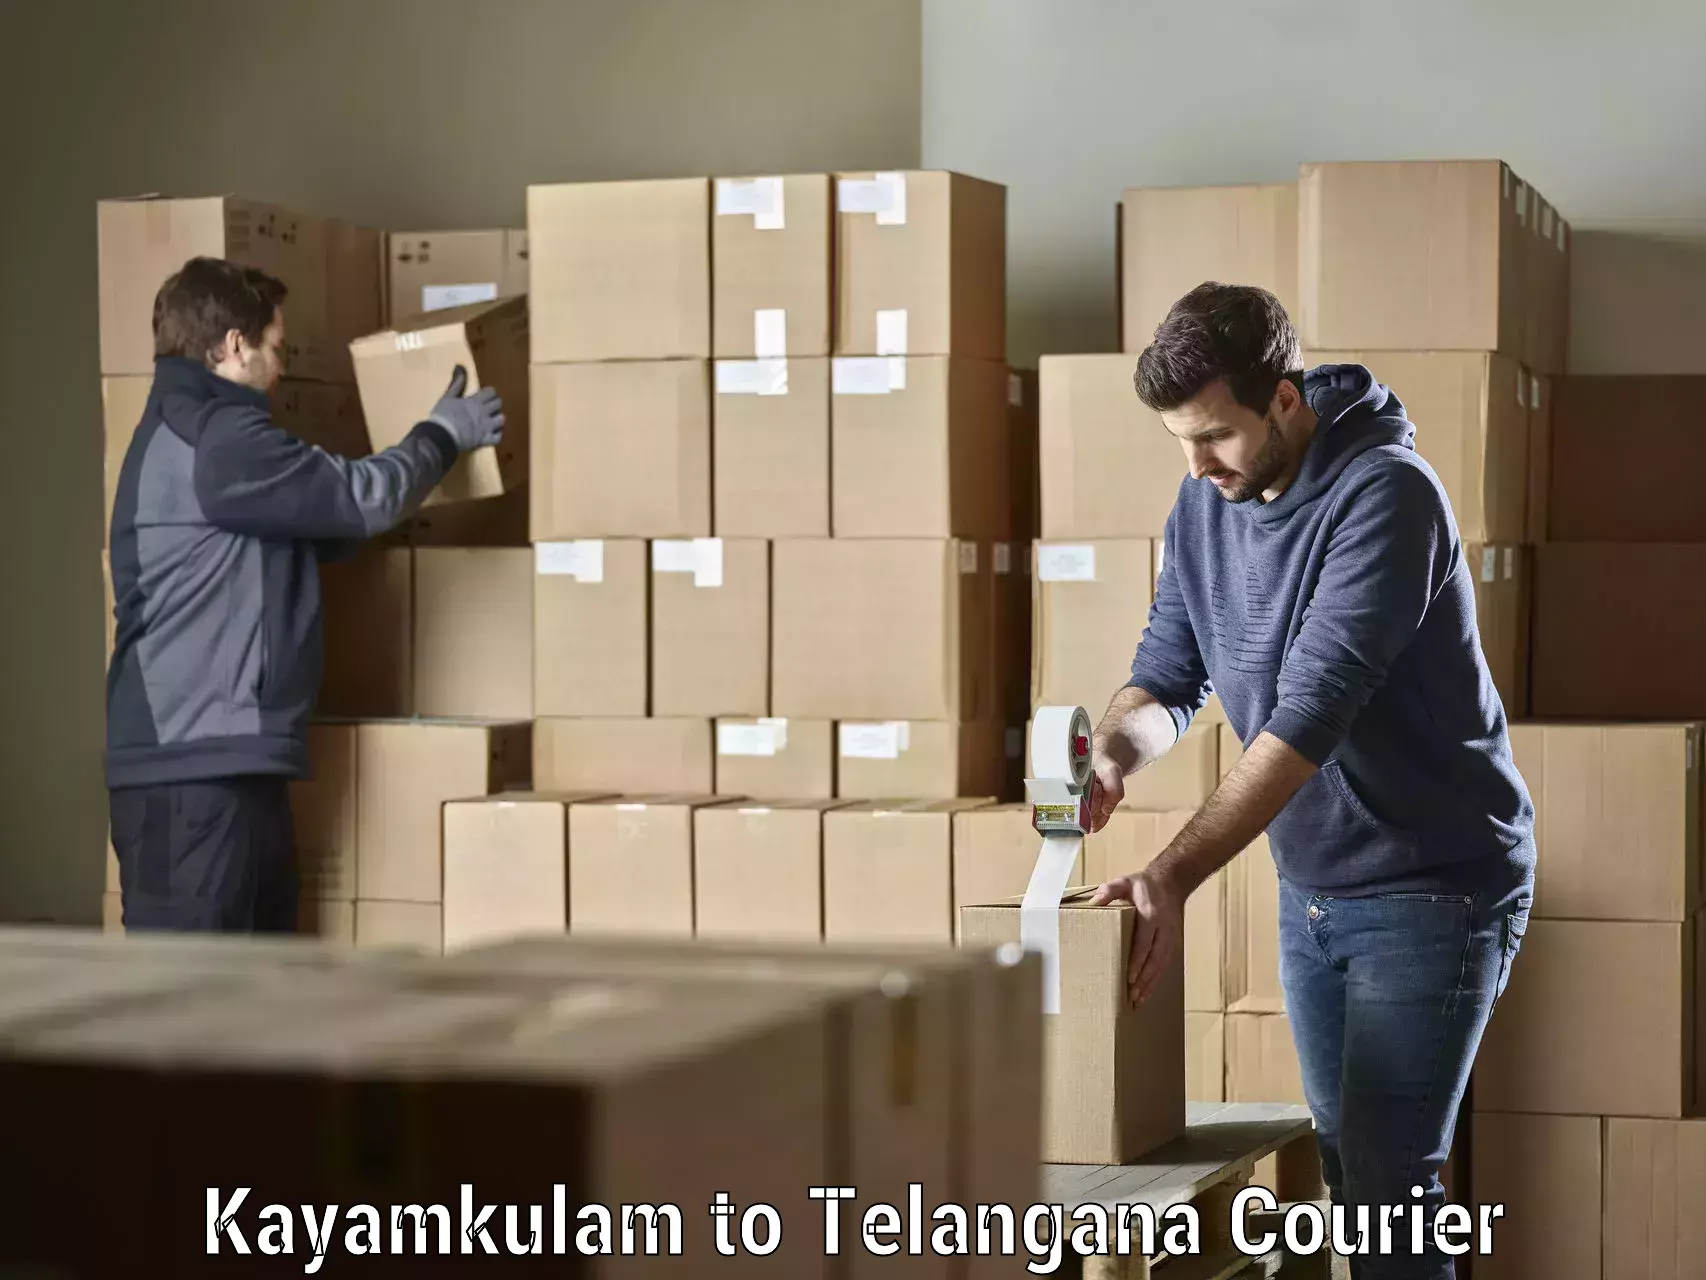 On-call courier service Kayamkulam to Sathupally